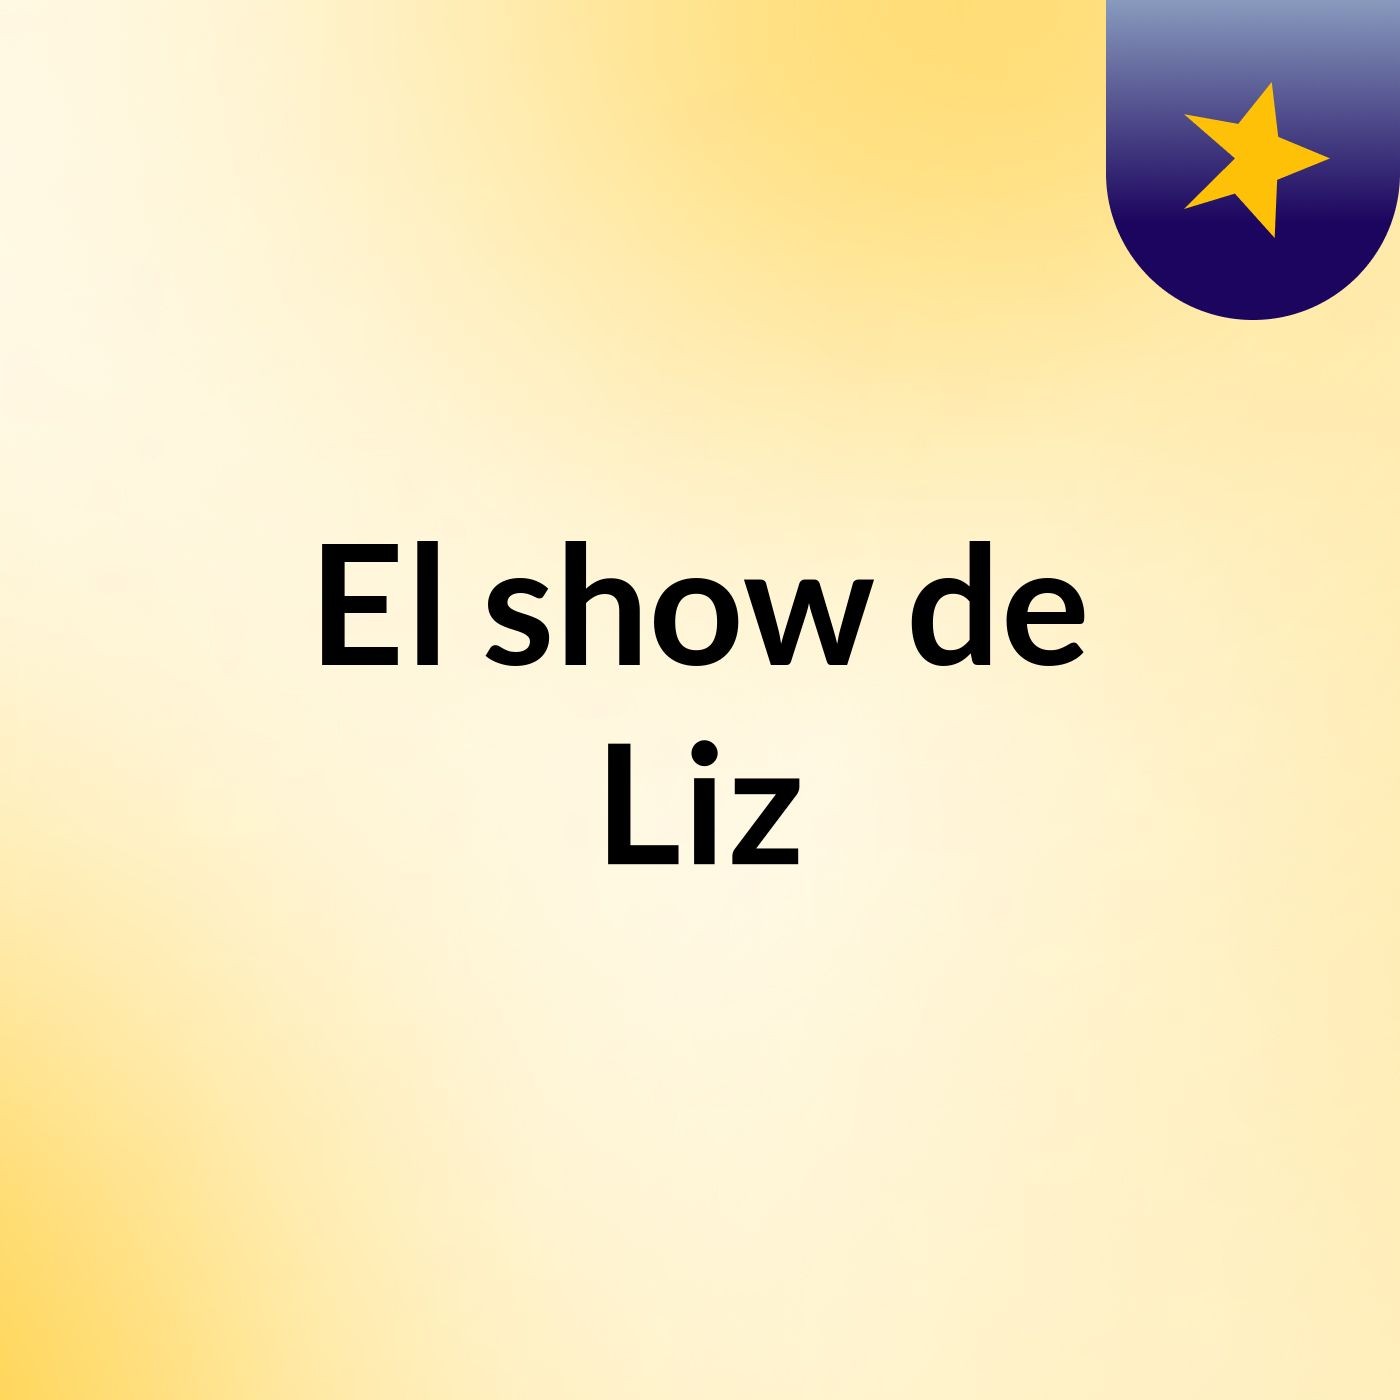 El show de Liz